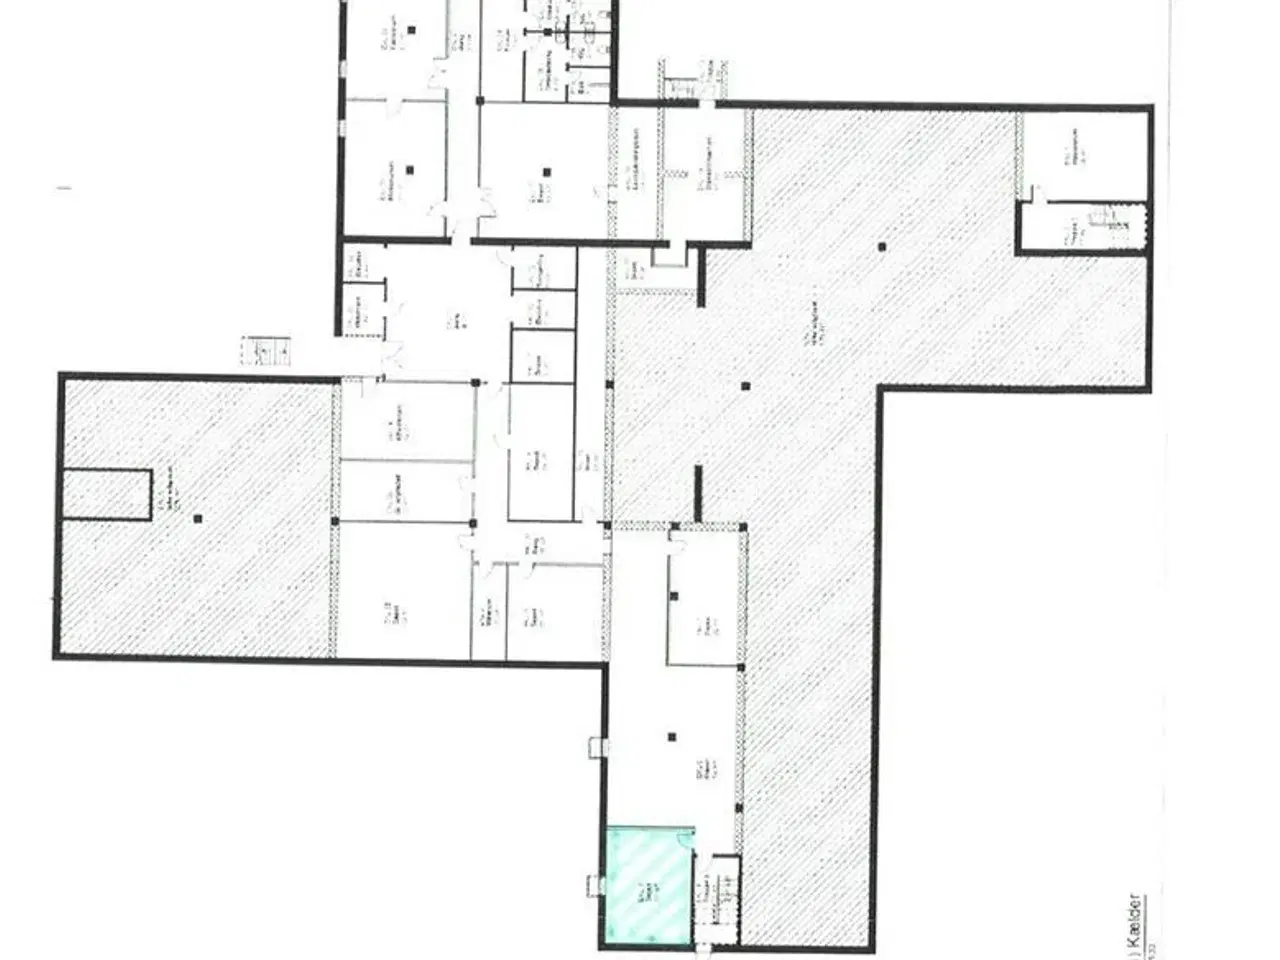 Billede 11 - Kontorlejemål beliggende på 2. sal med mulighed for at leje fra ca. 600 m² - 1.631 m².